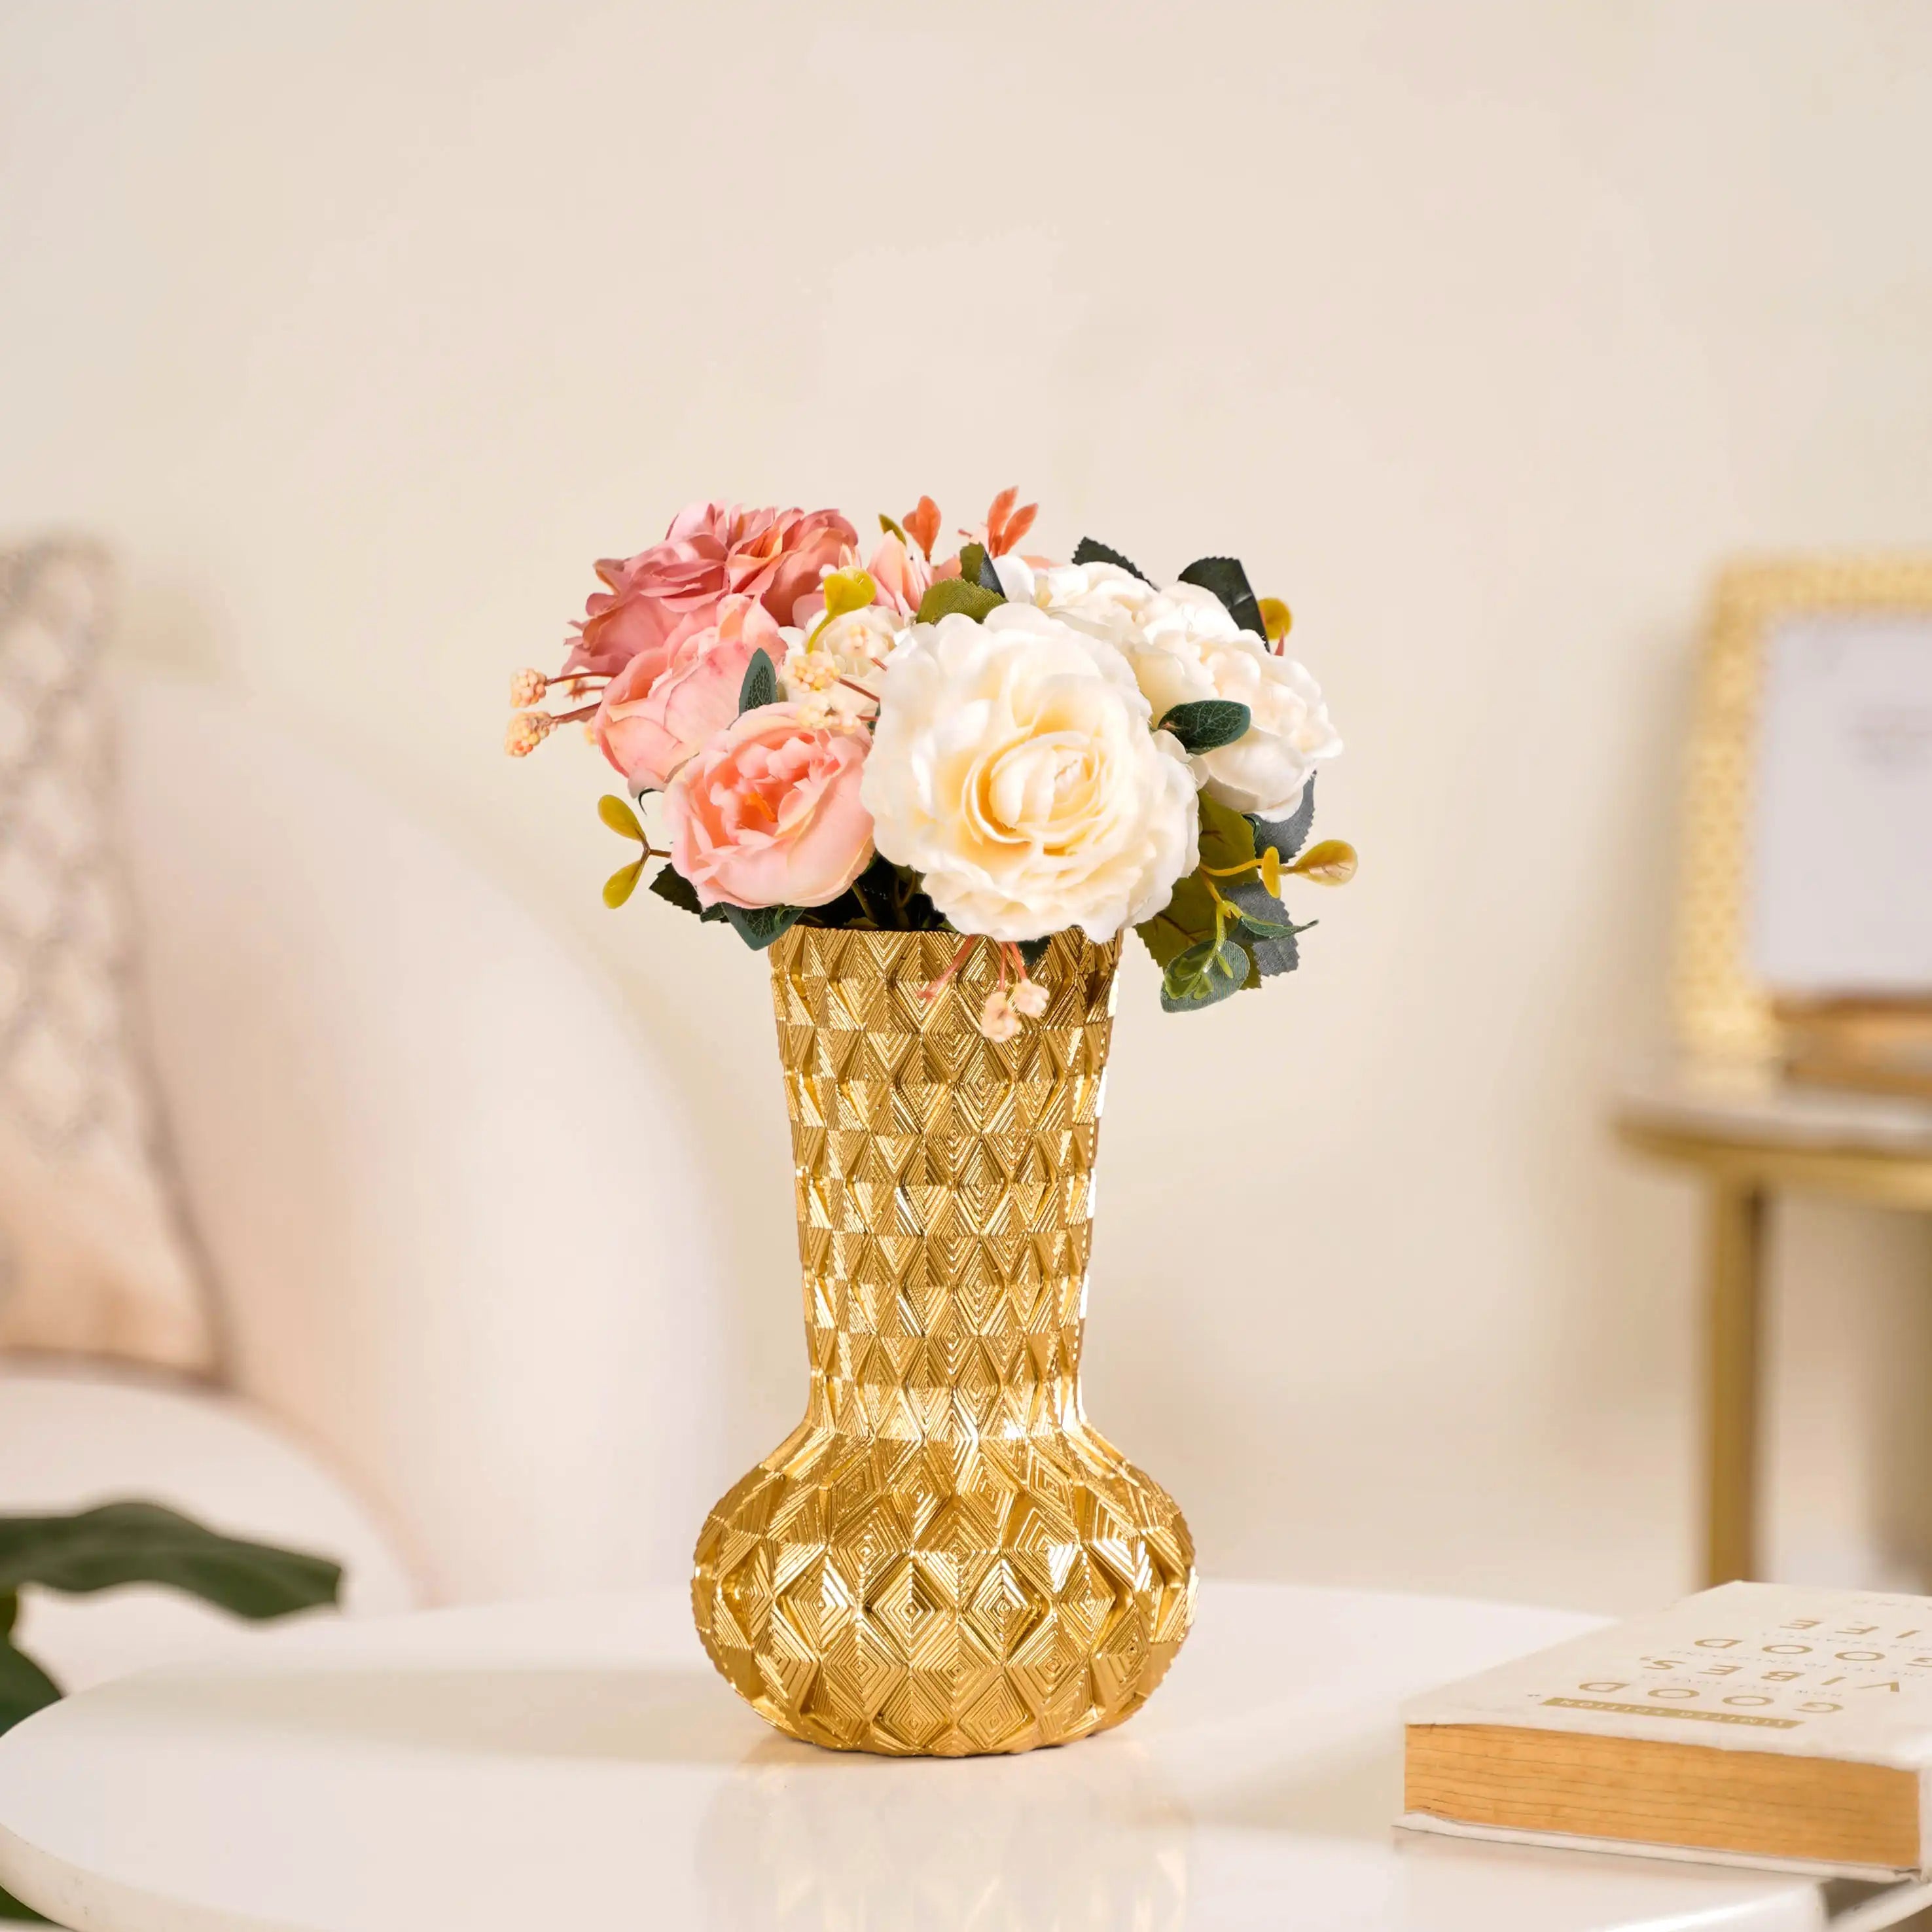 Vase - Buy Resin Flower Vase Online in India |Nestasia